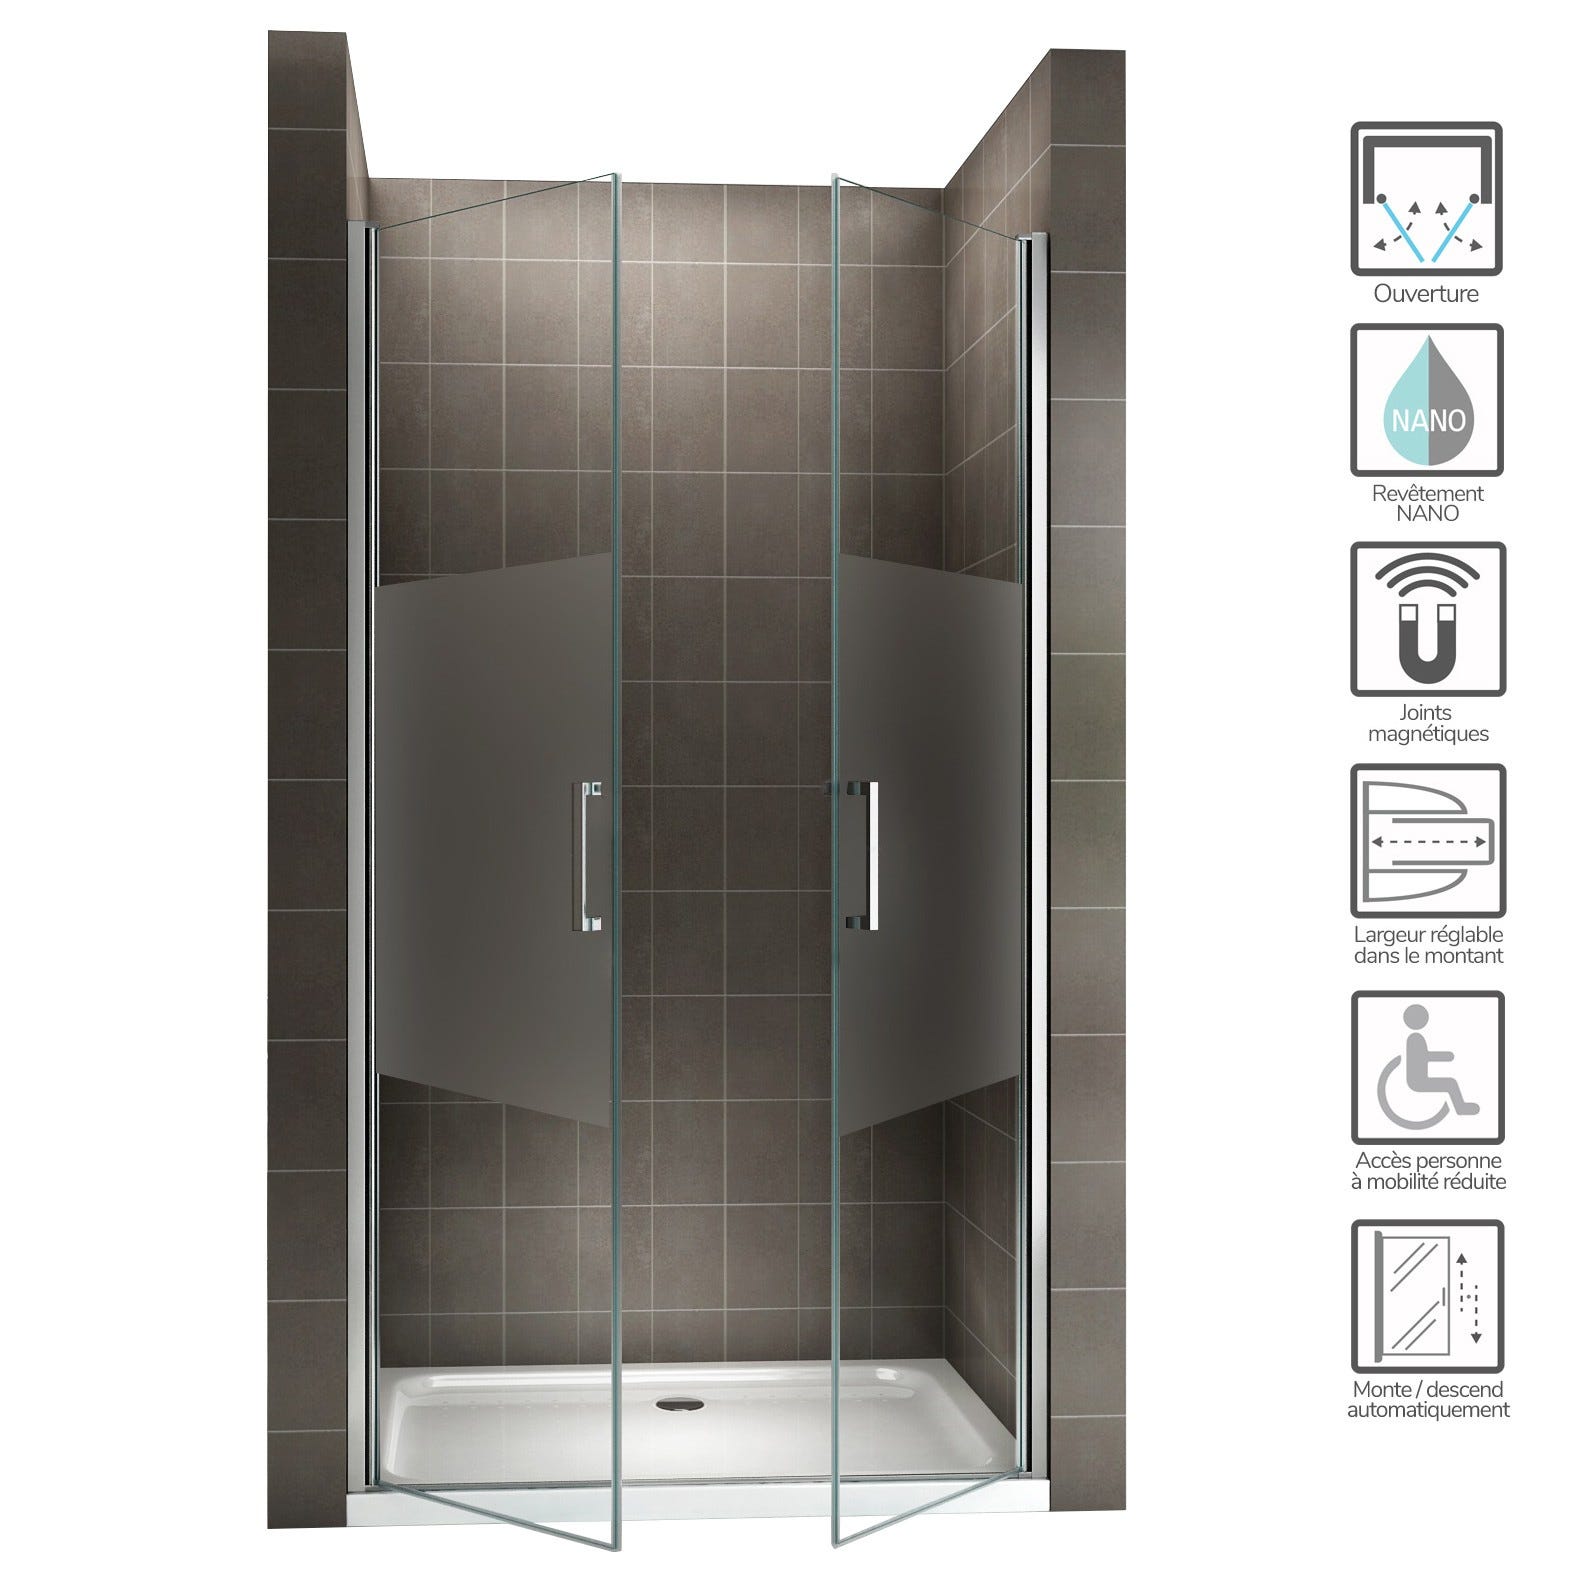 KAYA Porte de douche H 180 largeur réglable 86 à 89 cm verre semi-opaque 1